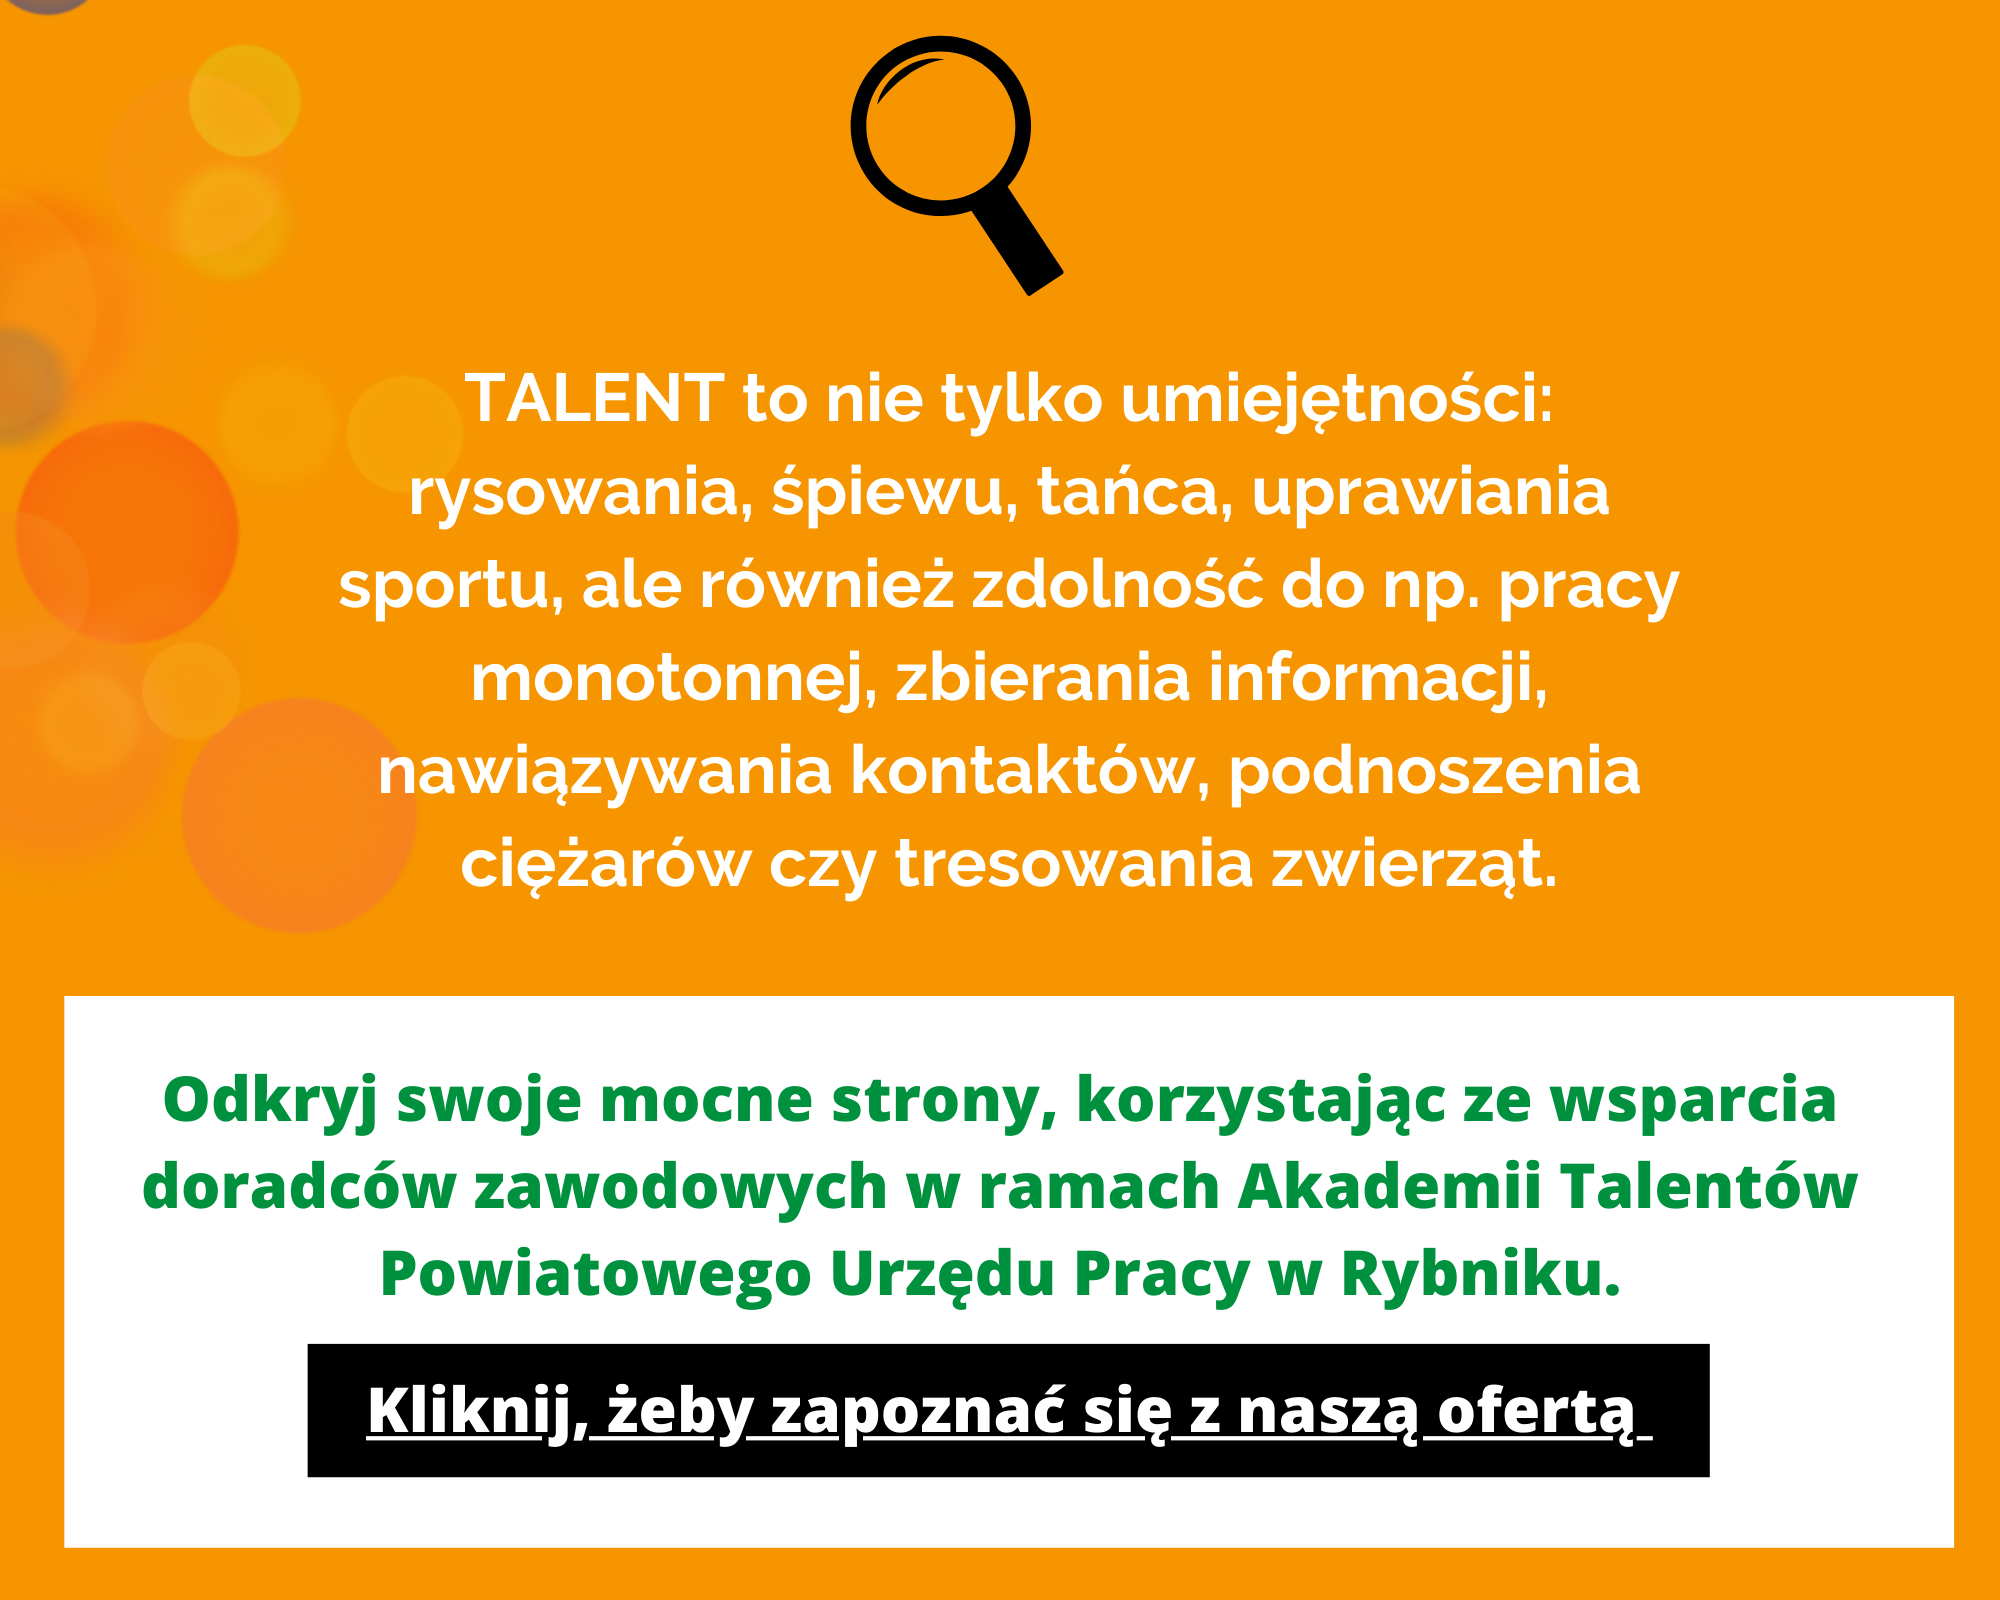 Slajd zachęcający do zapoznania się z ofertą w ramach projektu Akademii Talentów Powiatowego Urzędu Pracy w Rybniku.